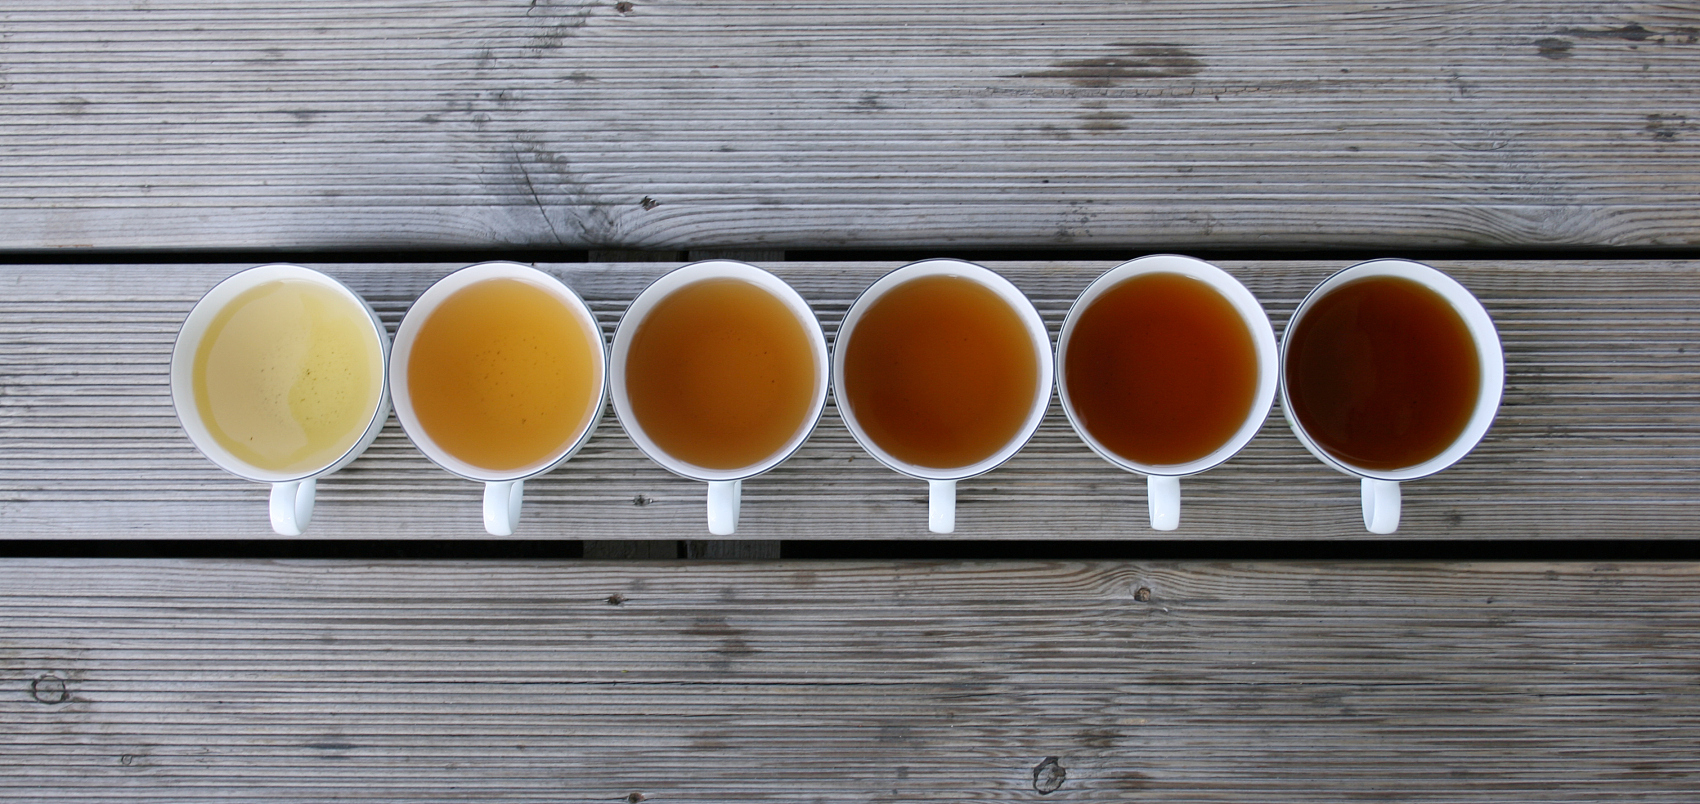 Tipos de chá: como classificar o chá na China?